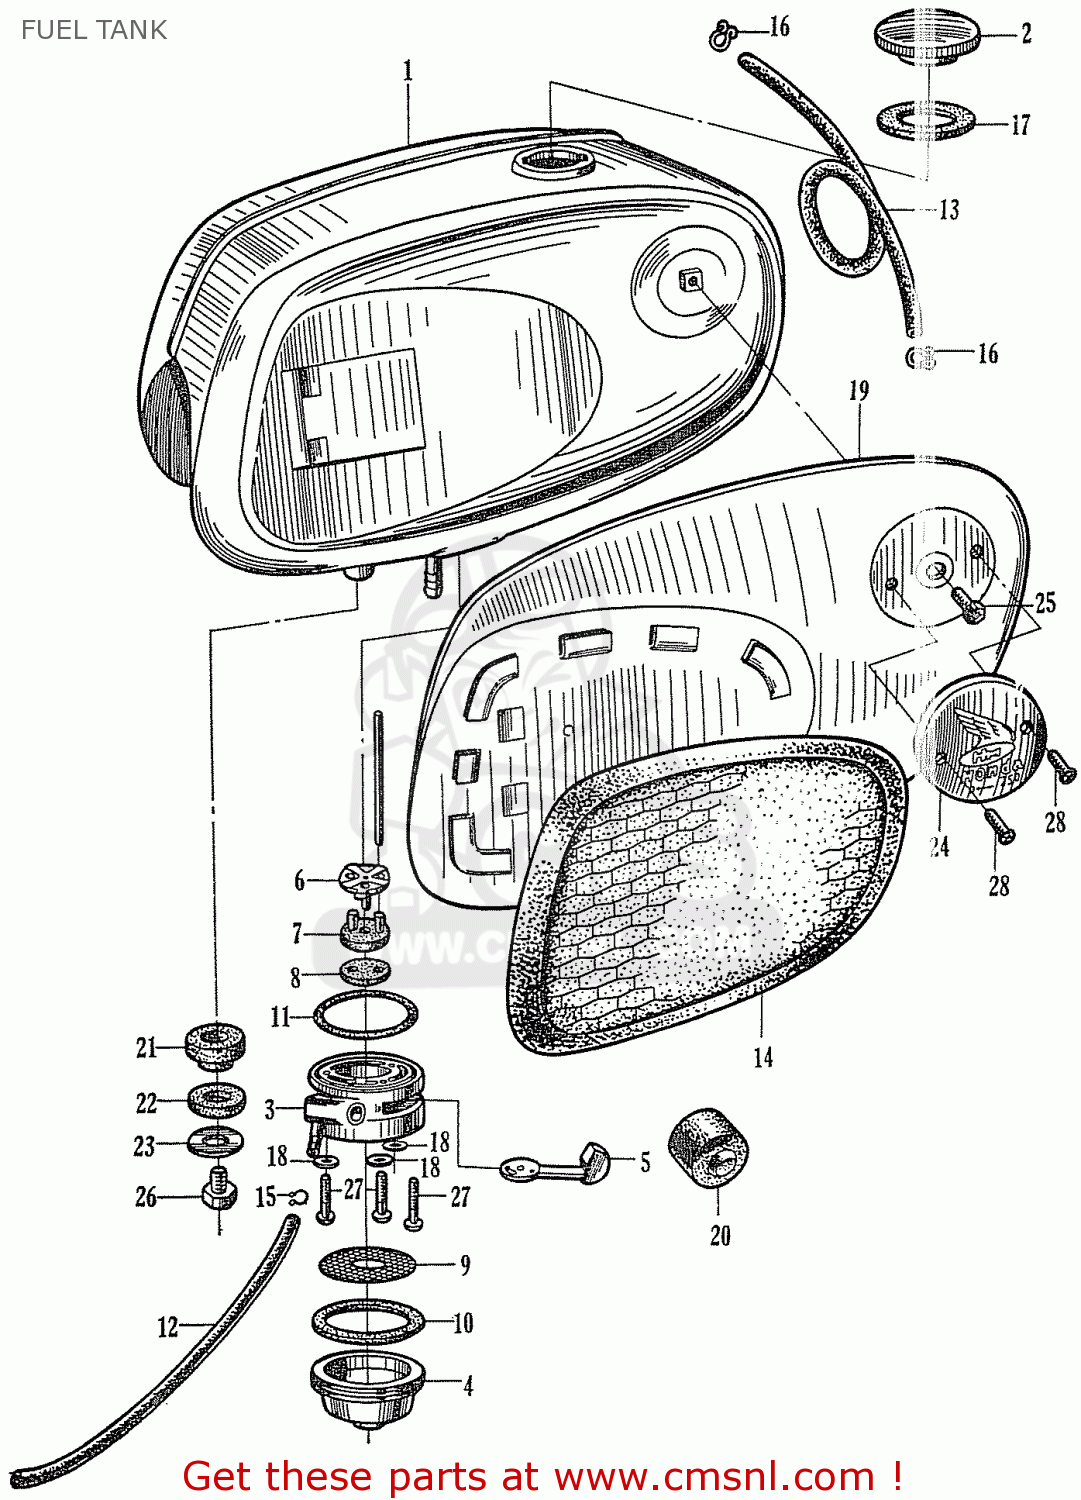 1967 Honda Dream Parts